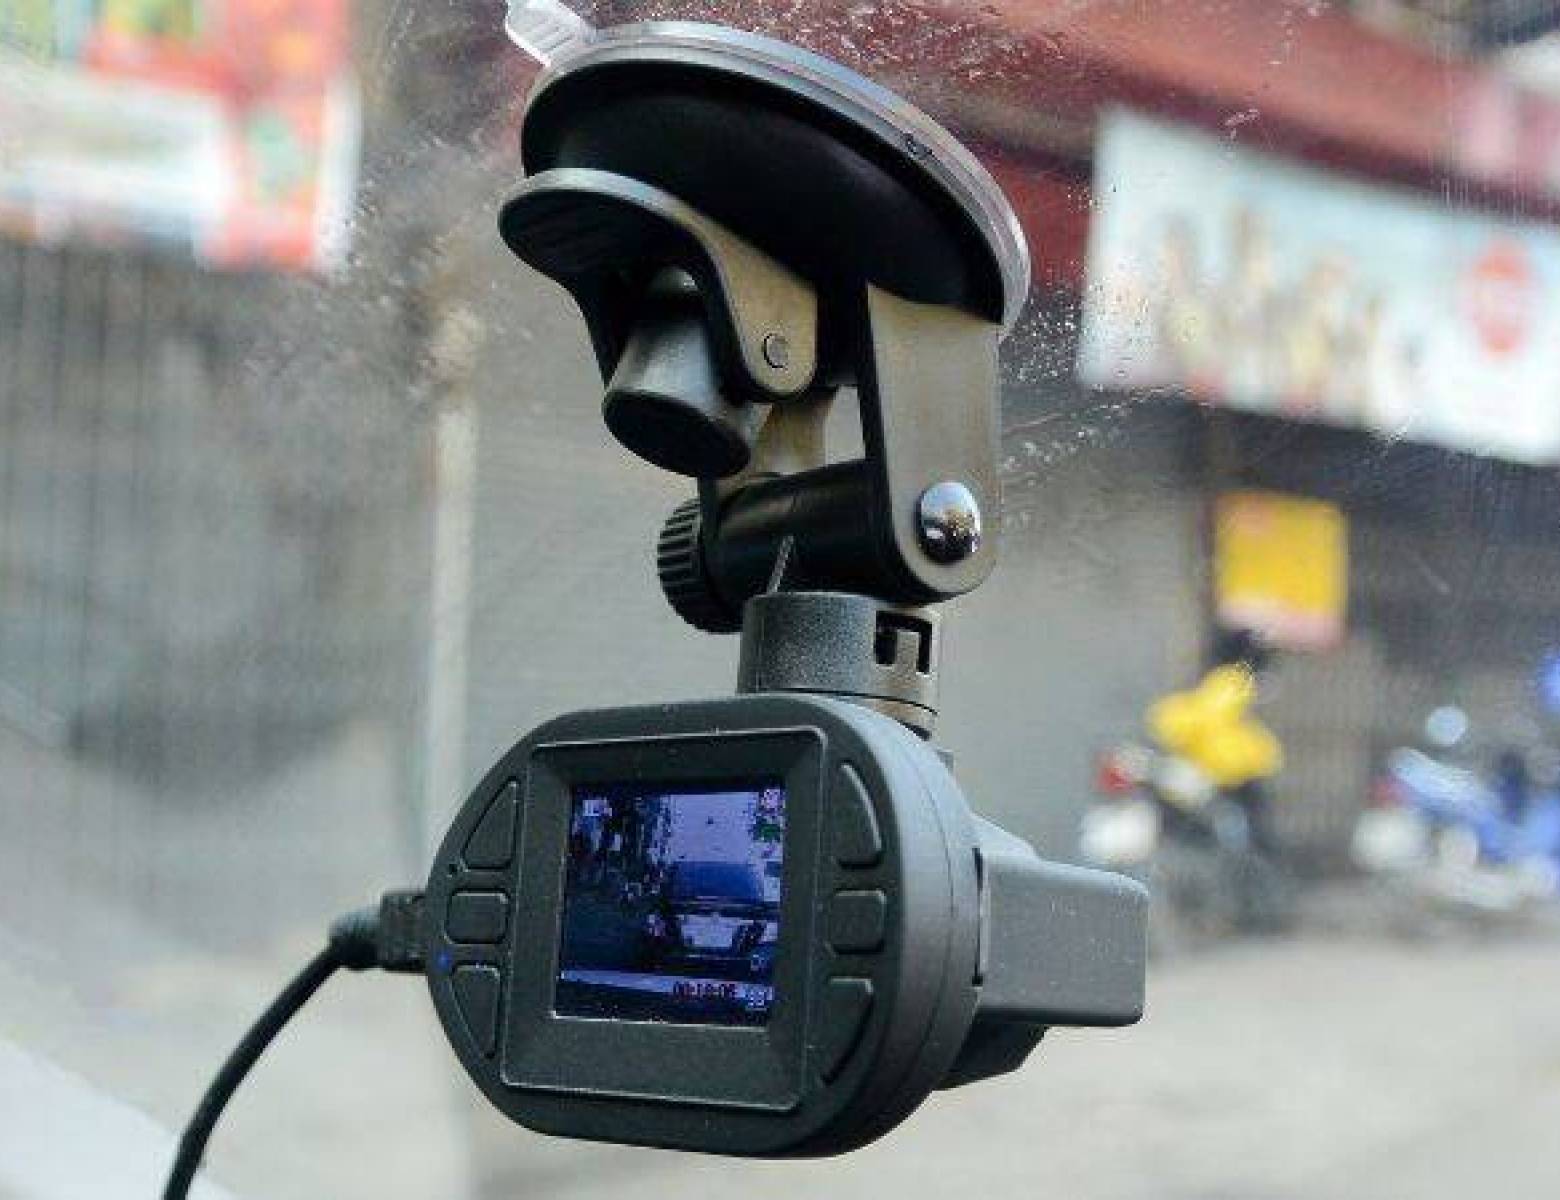 Nagrywanie w ciemnościach: jakie kamery do samochodu radzą sobie najlepiej?